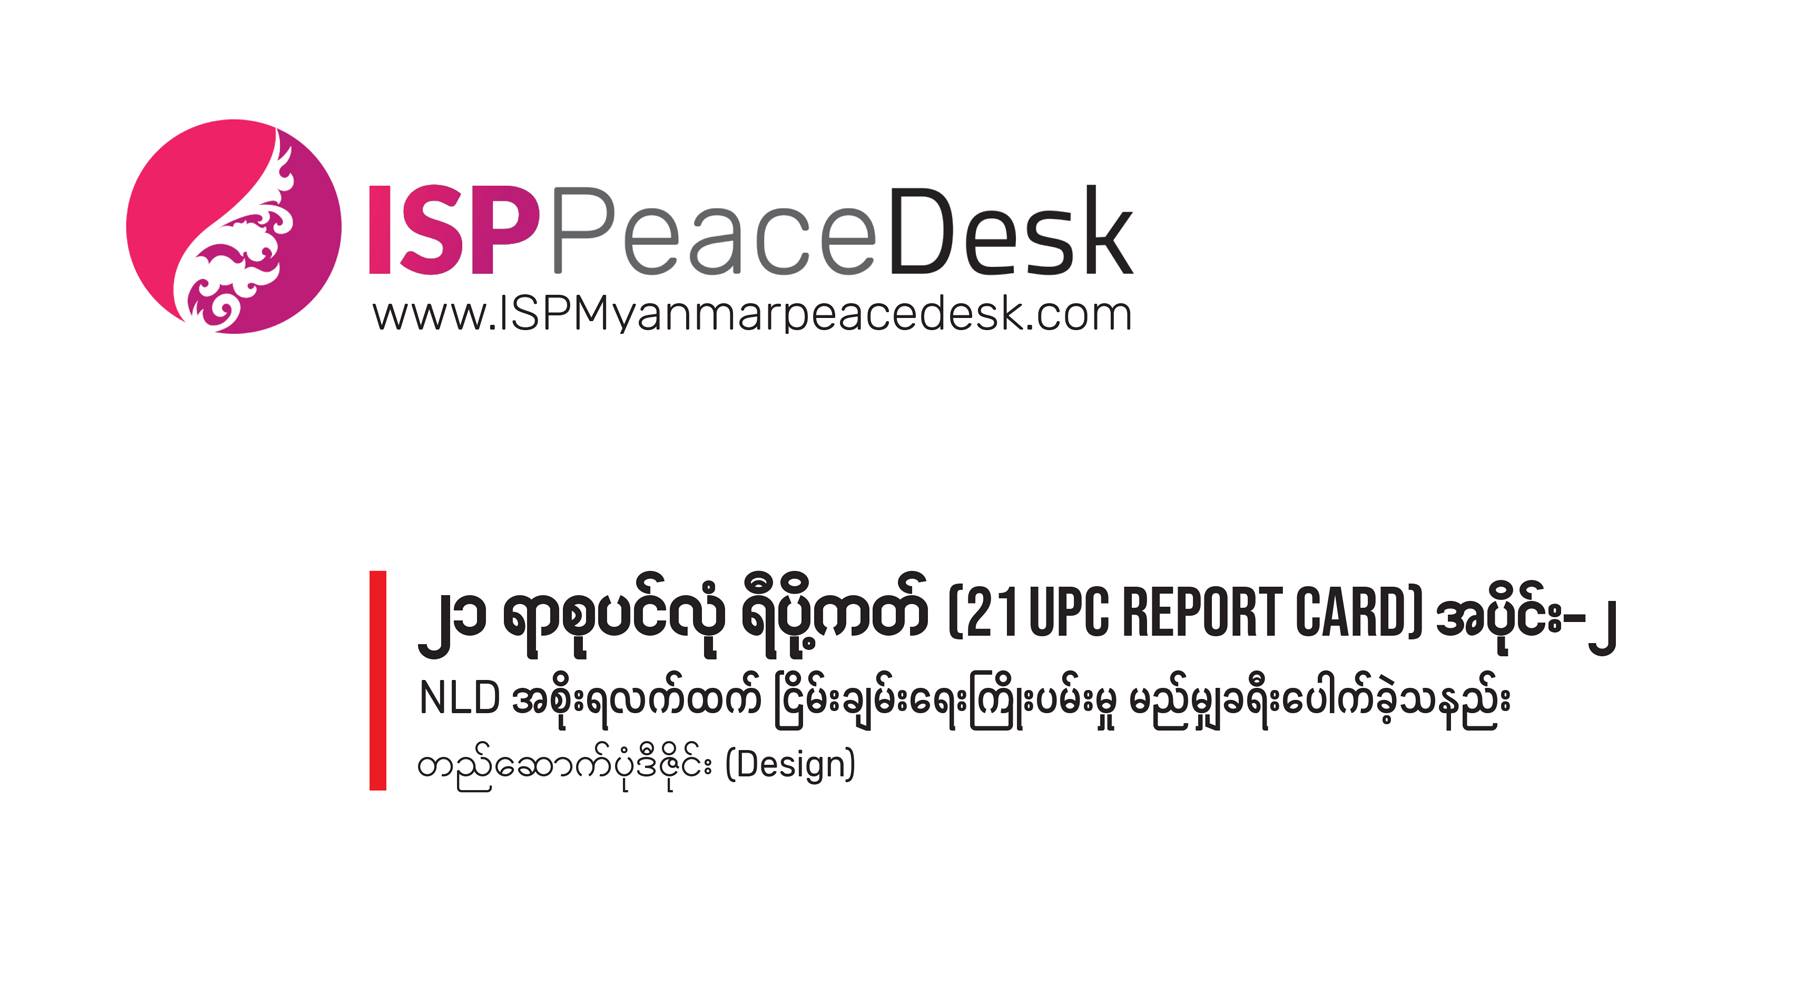 ၂၁ ရာစုပင်လုံ ရီပို့ကတ် (21 UPC Report Card) အပိုင်း ၂                              NLD အစိုးရလက်ထက် ငြိမ်းချမ်းရေးကြိုးပမ်းမှု မည်မျှ ခရီးပေါက်ခဲ့သနည်း